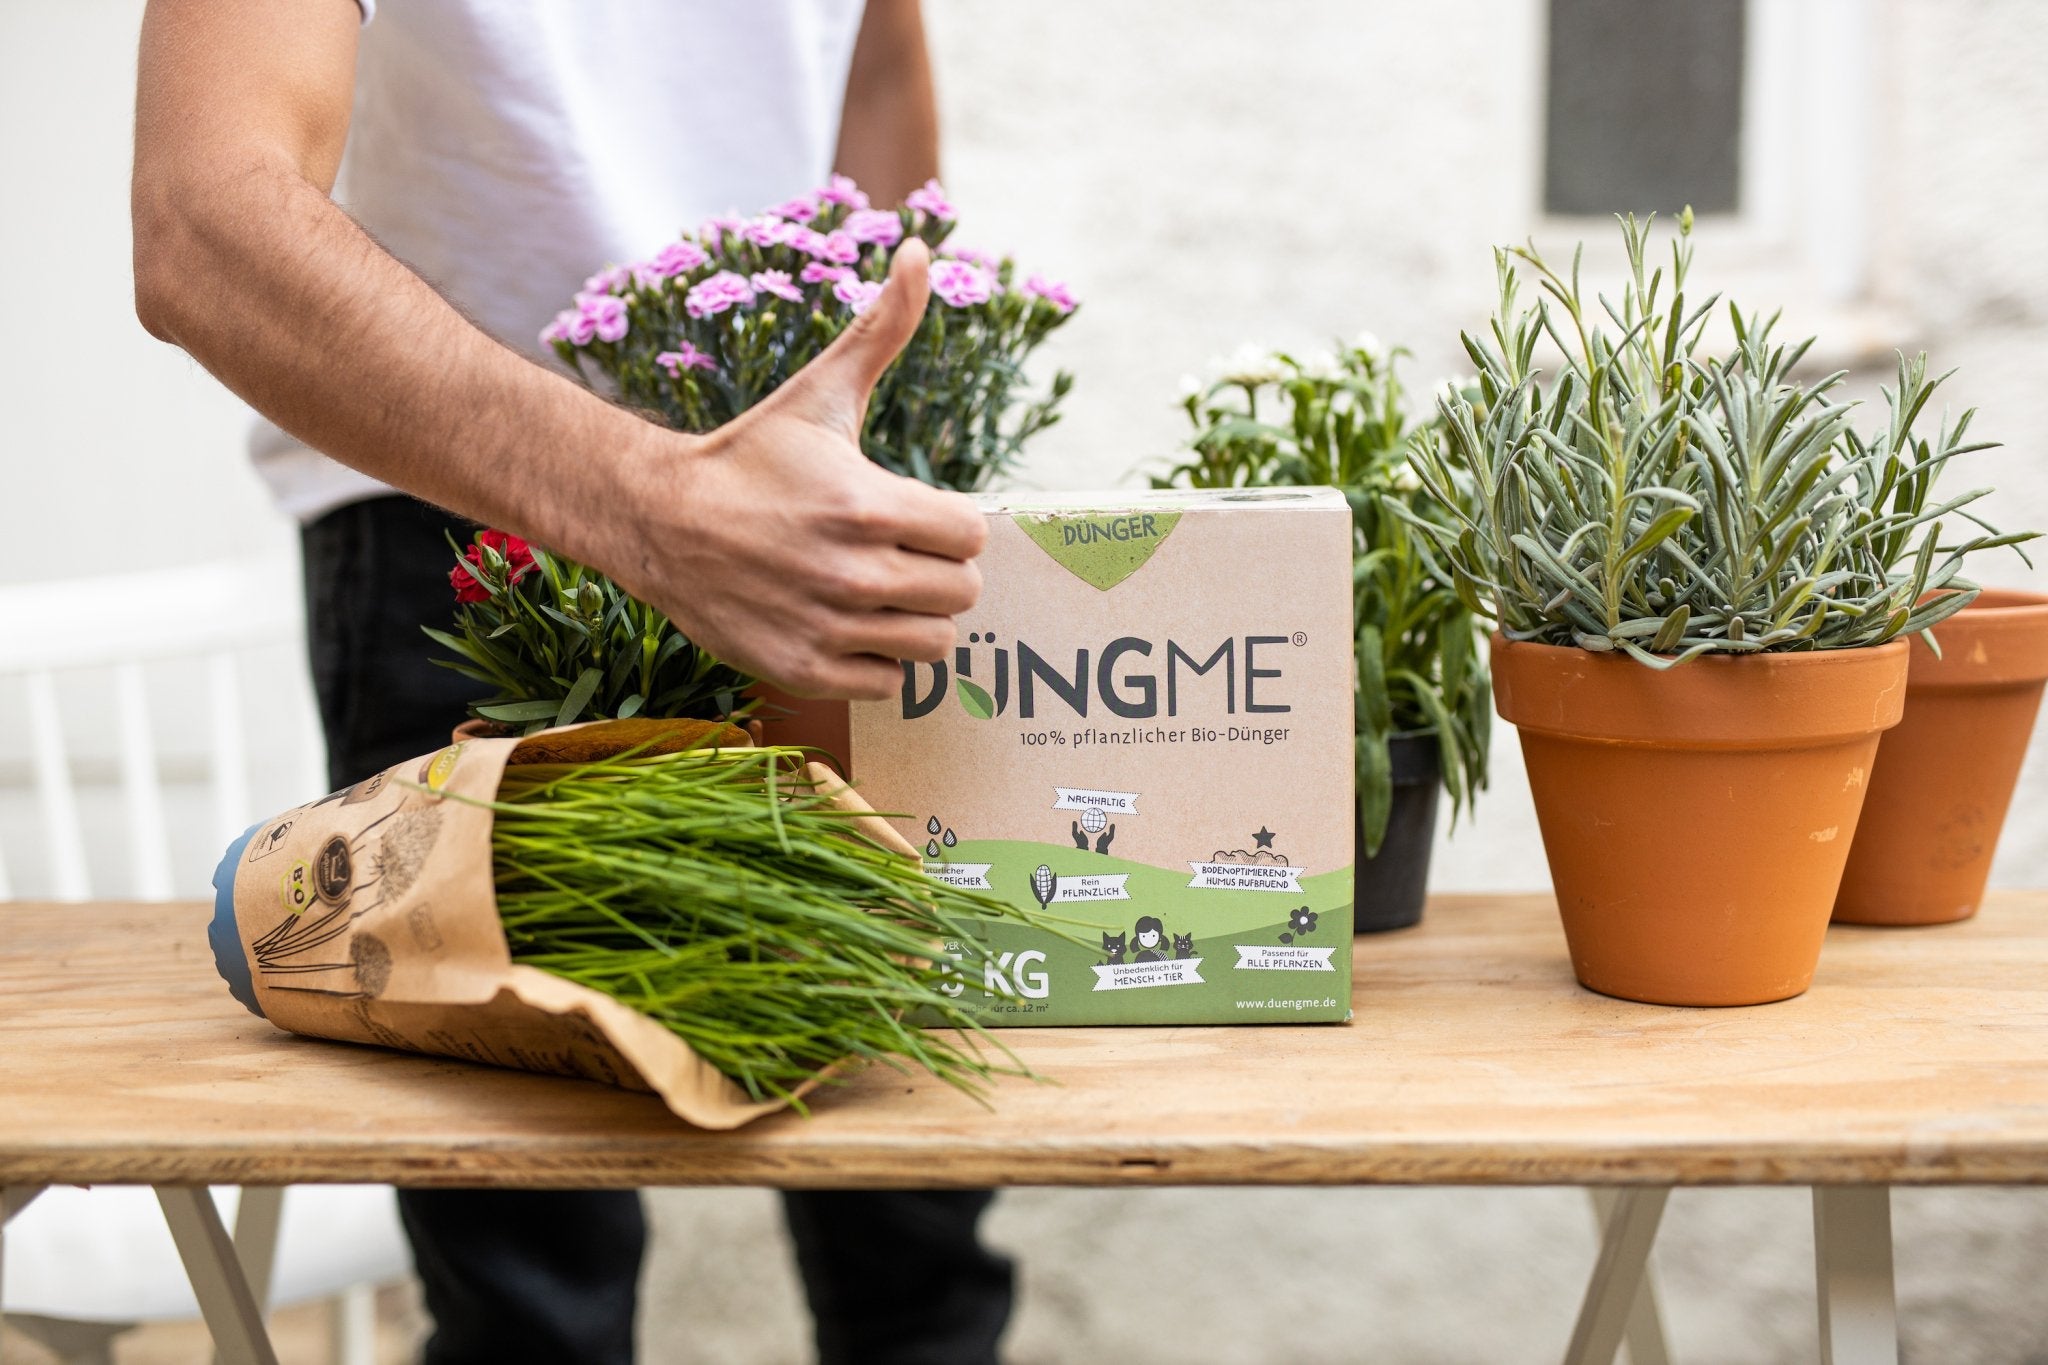 Organischer DüngMe Universaldünger in Pelletform, ideal für nachhaltiges Gärtnern und reiches Pflanzenwachstum.